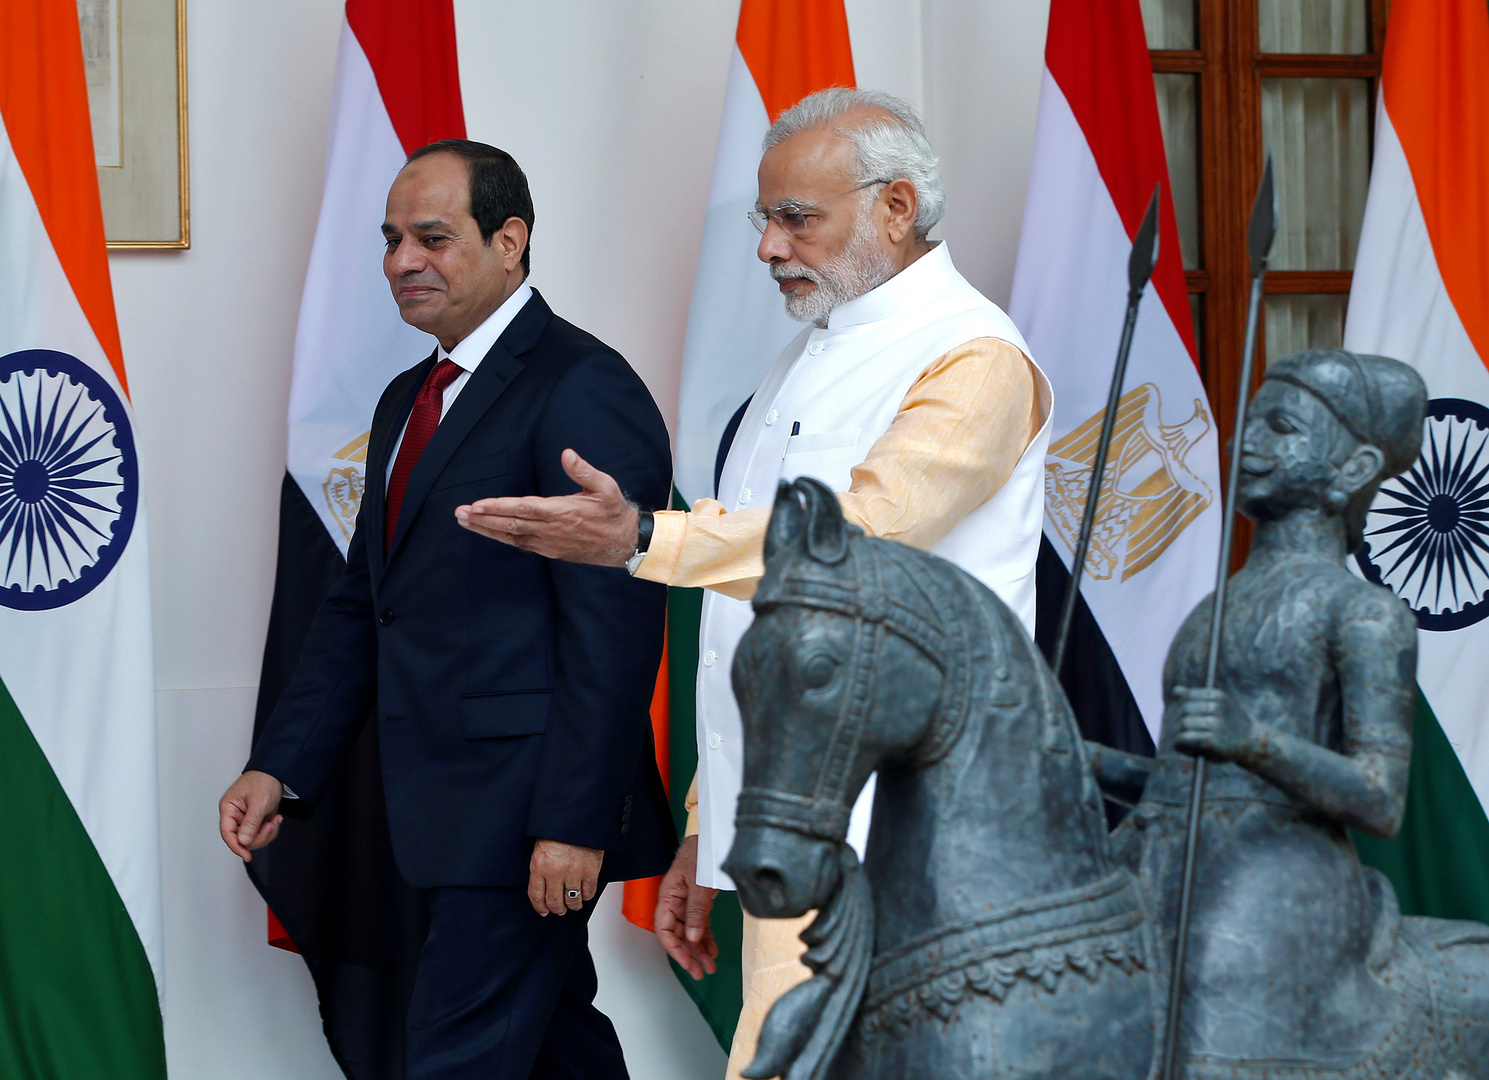 السيسي يتوصل لاتفاق مع رئيس وزراء الهند بخصوص مكافحة فيروس كورونا